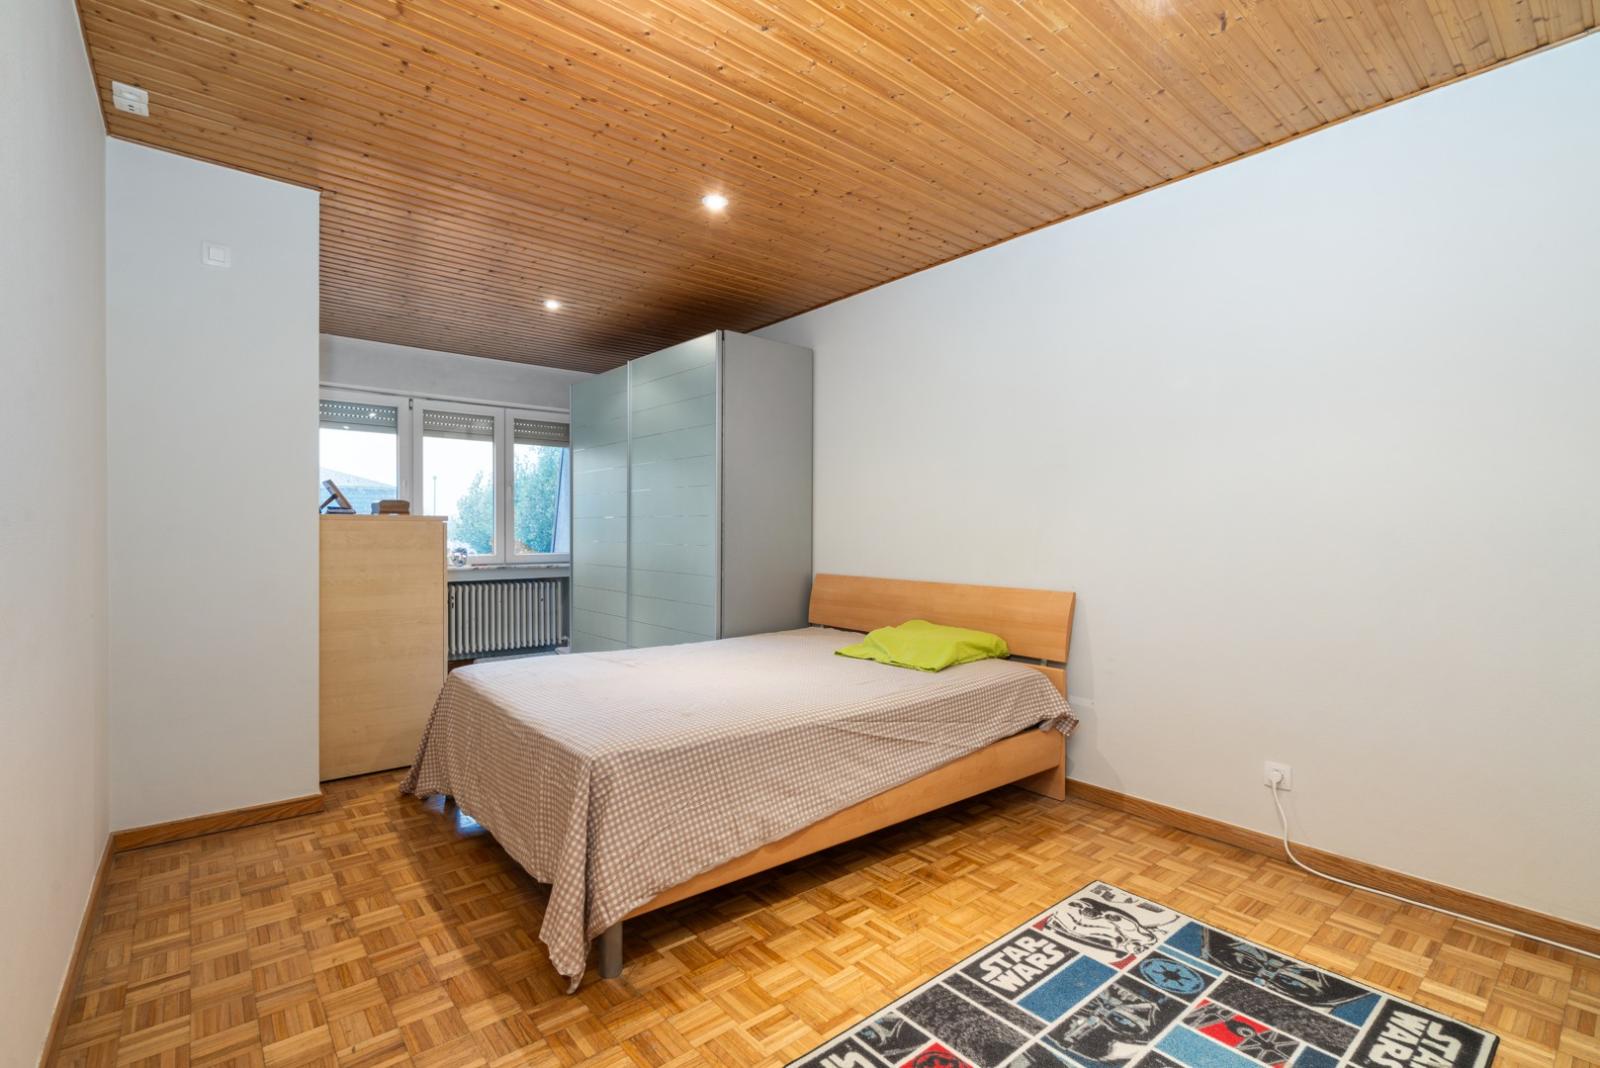 Ruim duplex-appartement met drie slaapkamers & garage te Harelbeke!